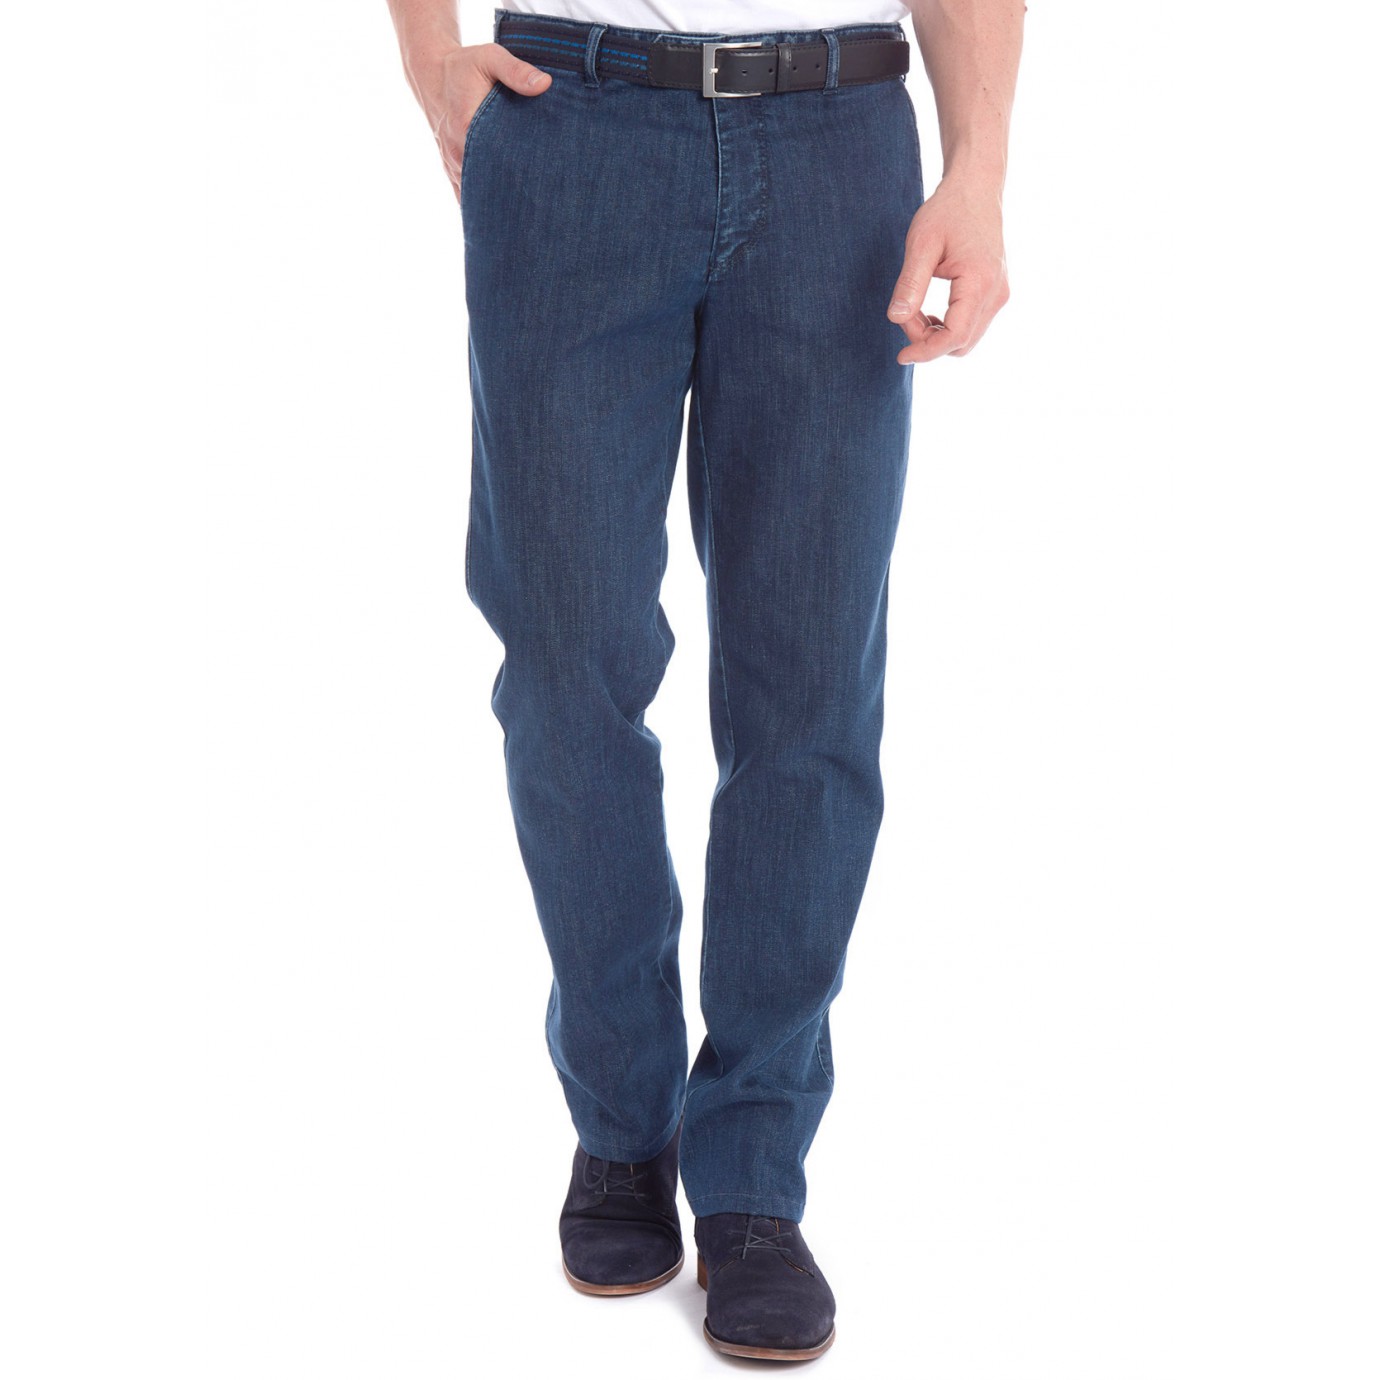 Хлопковые мужские брюки Meyer, модель Bonn 6-488/18 синие, джинсовые купитьв Москве в интернет-магазине SHOP4BIG - цена, фото, описание